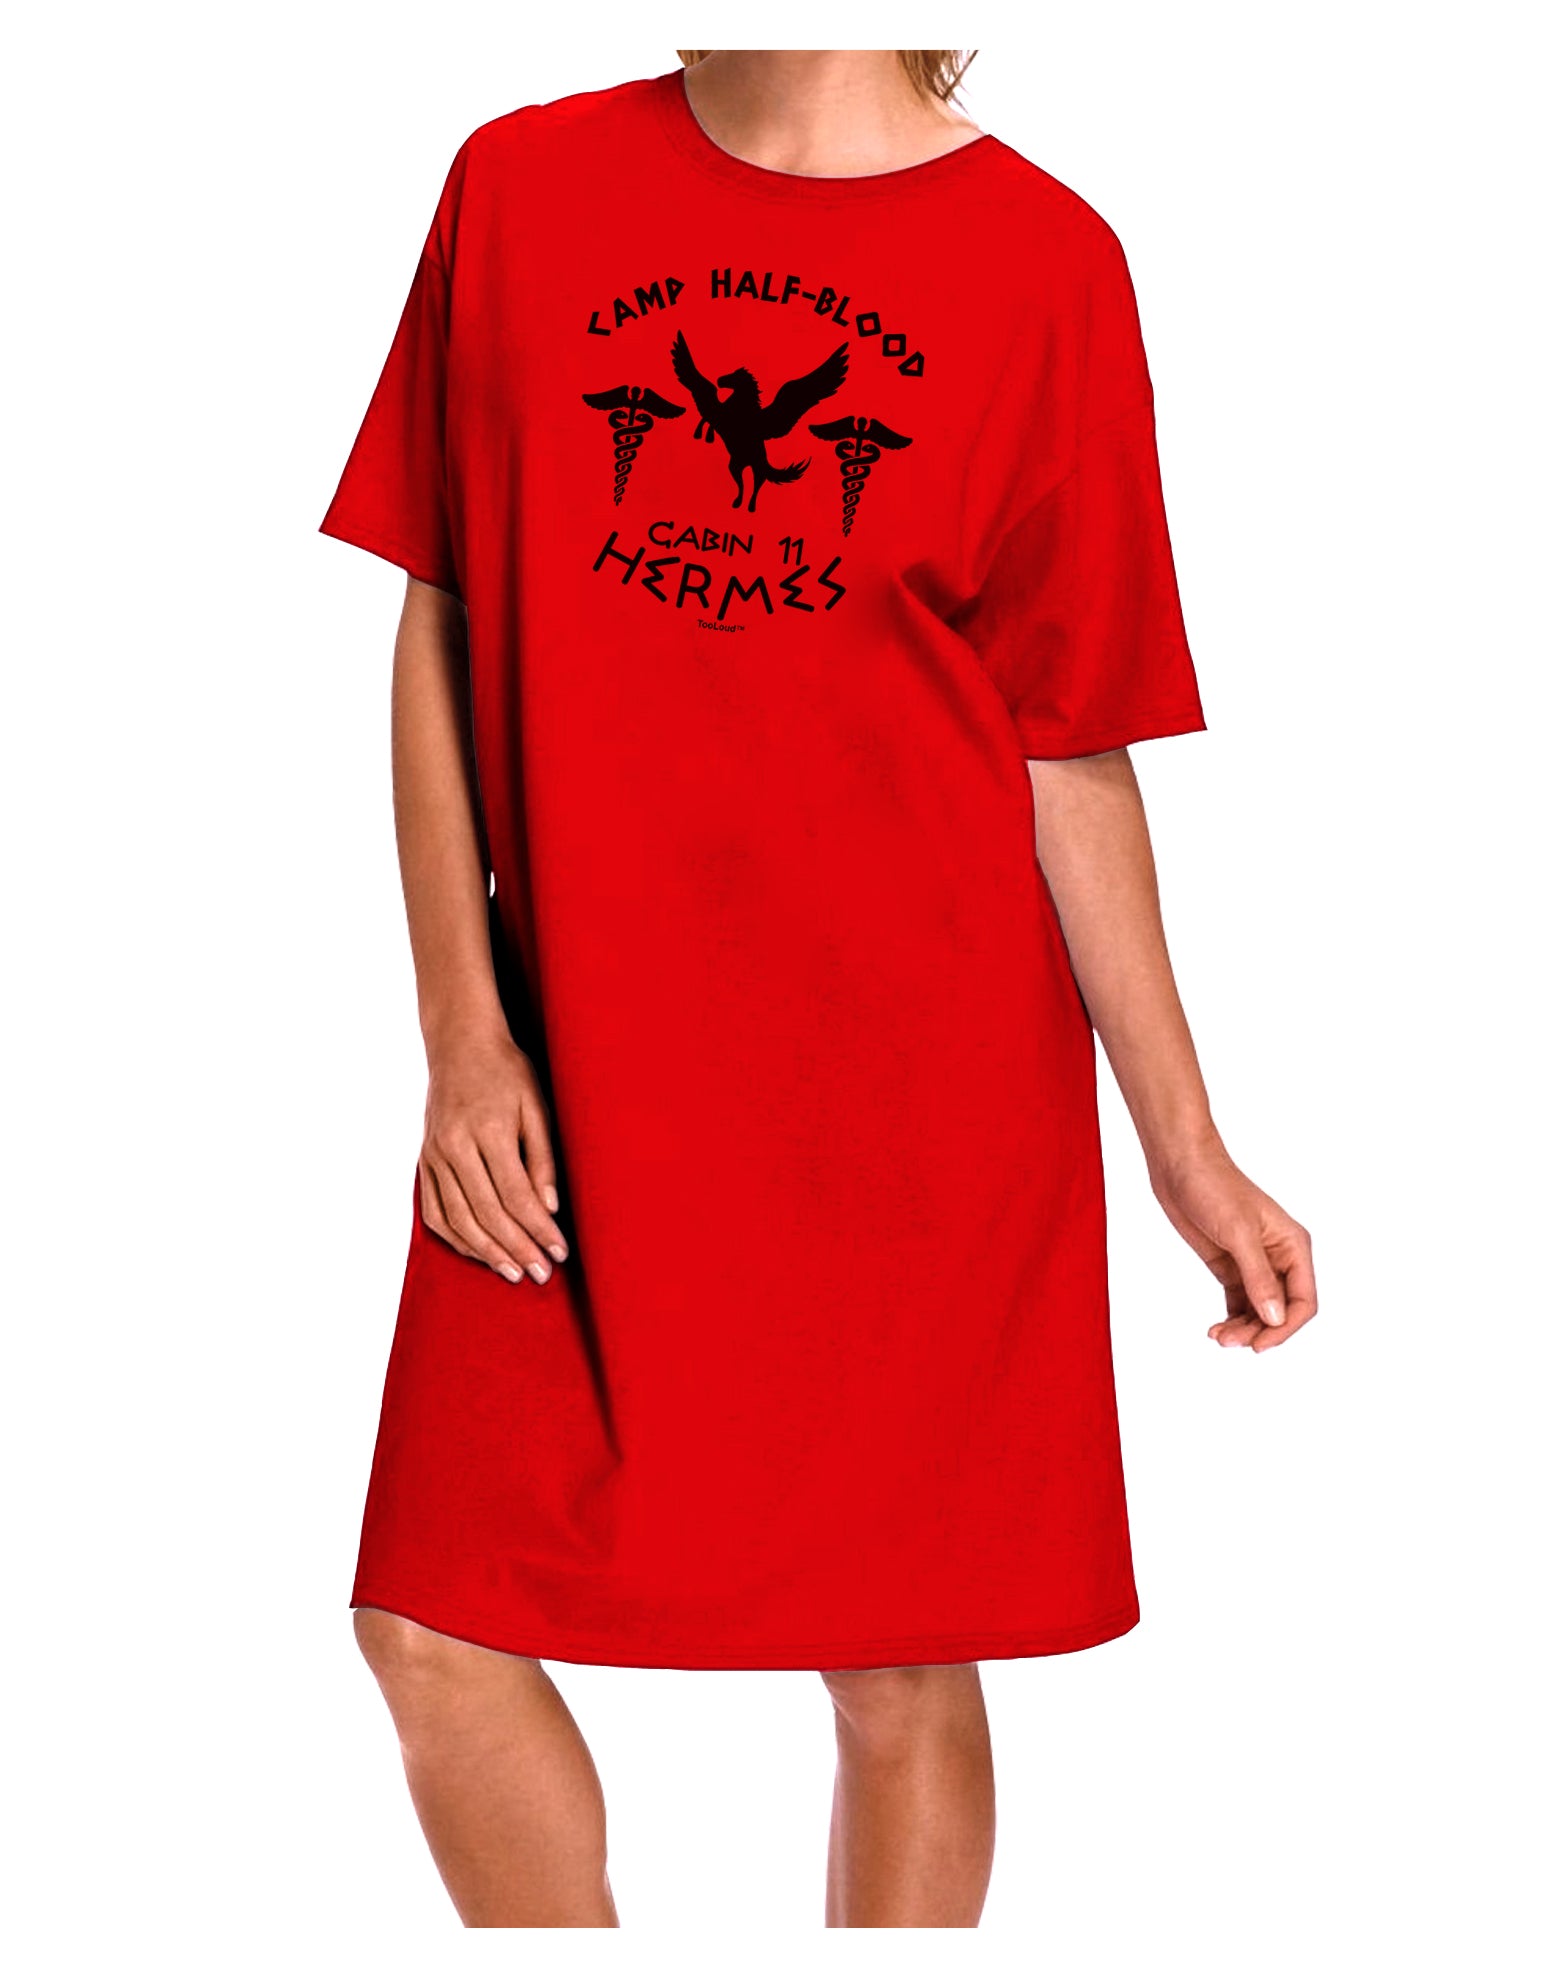 Camp Half Blood Cabin 11 Hermes Adult T-Shirt